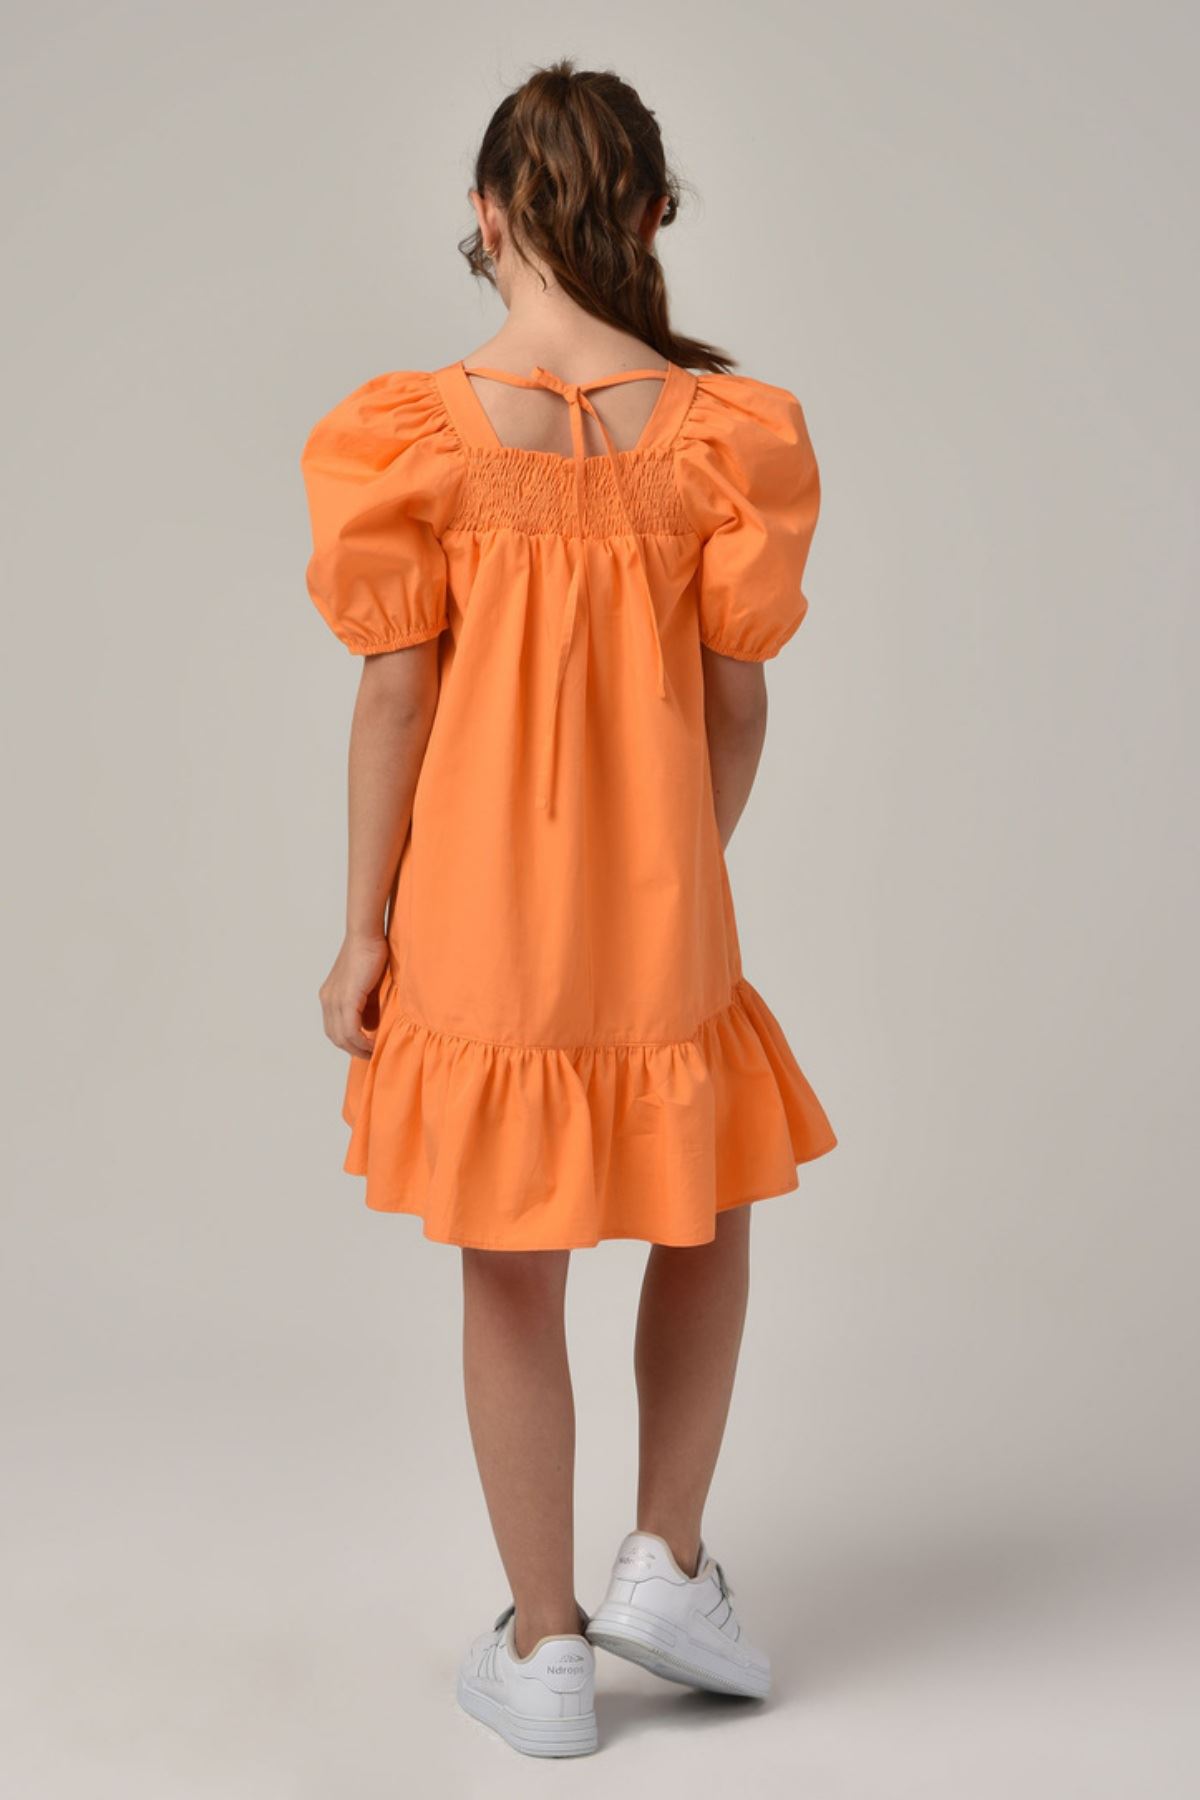 8-14 Yaş Alaçatı Ballon Kız Çocuk Elbise -Oranj